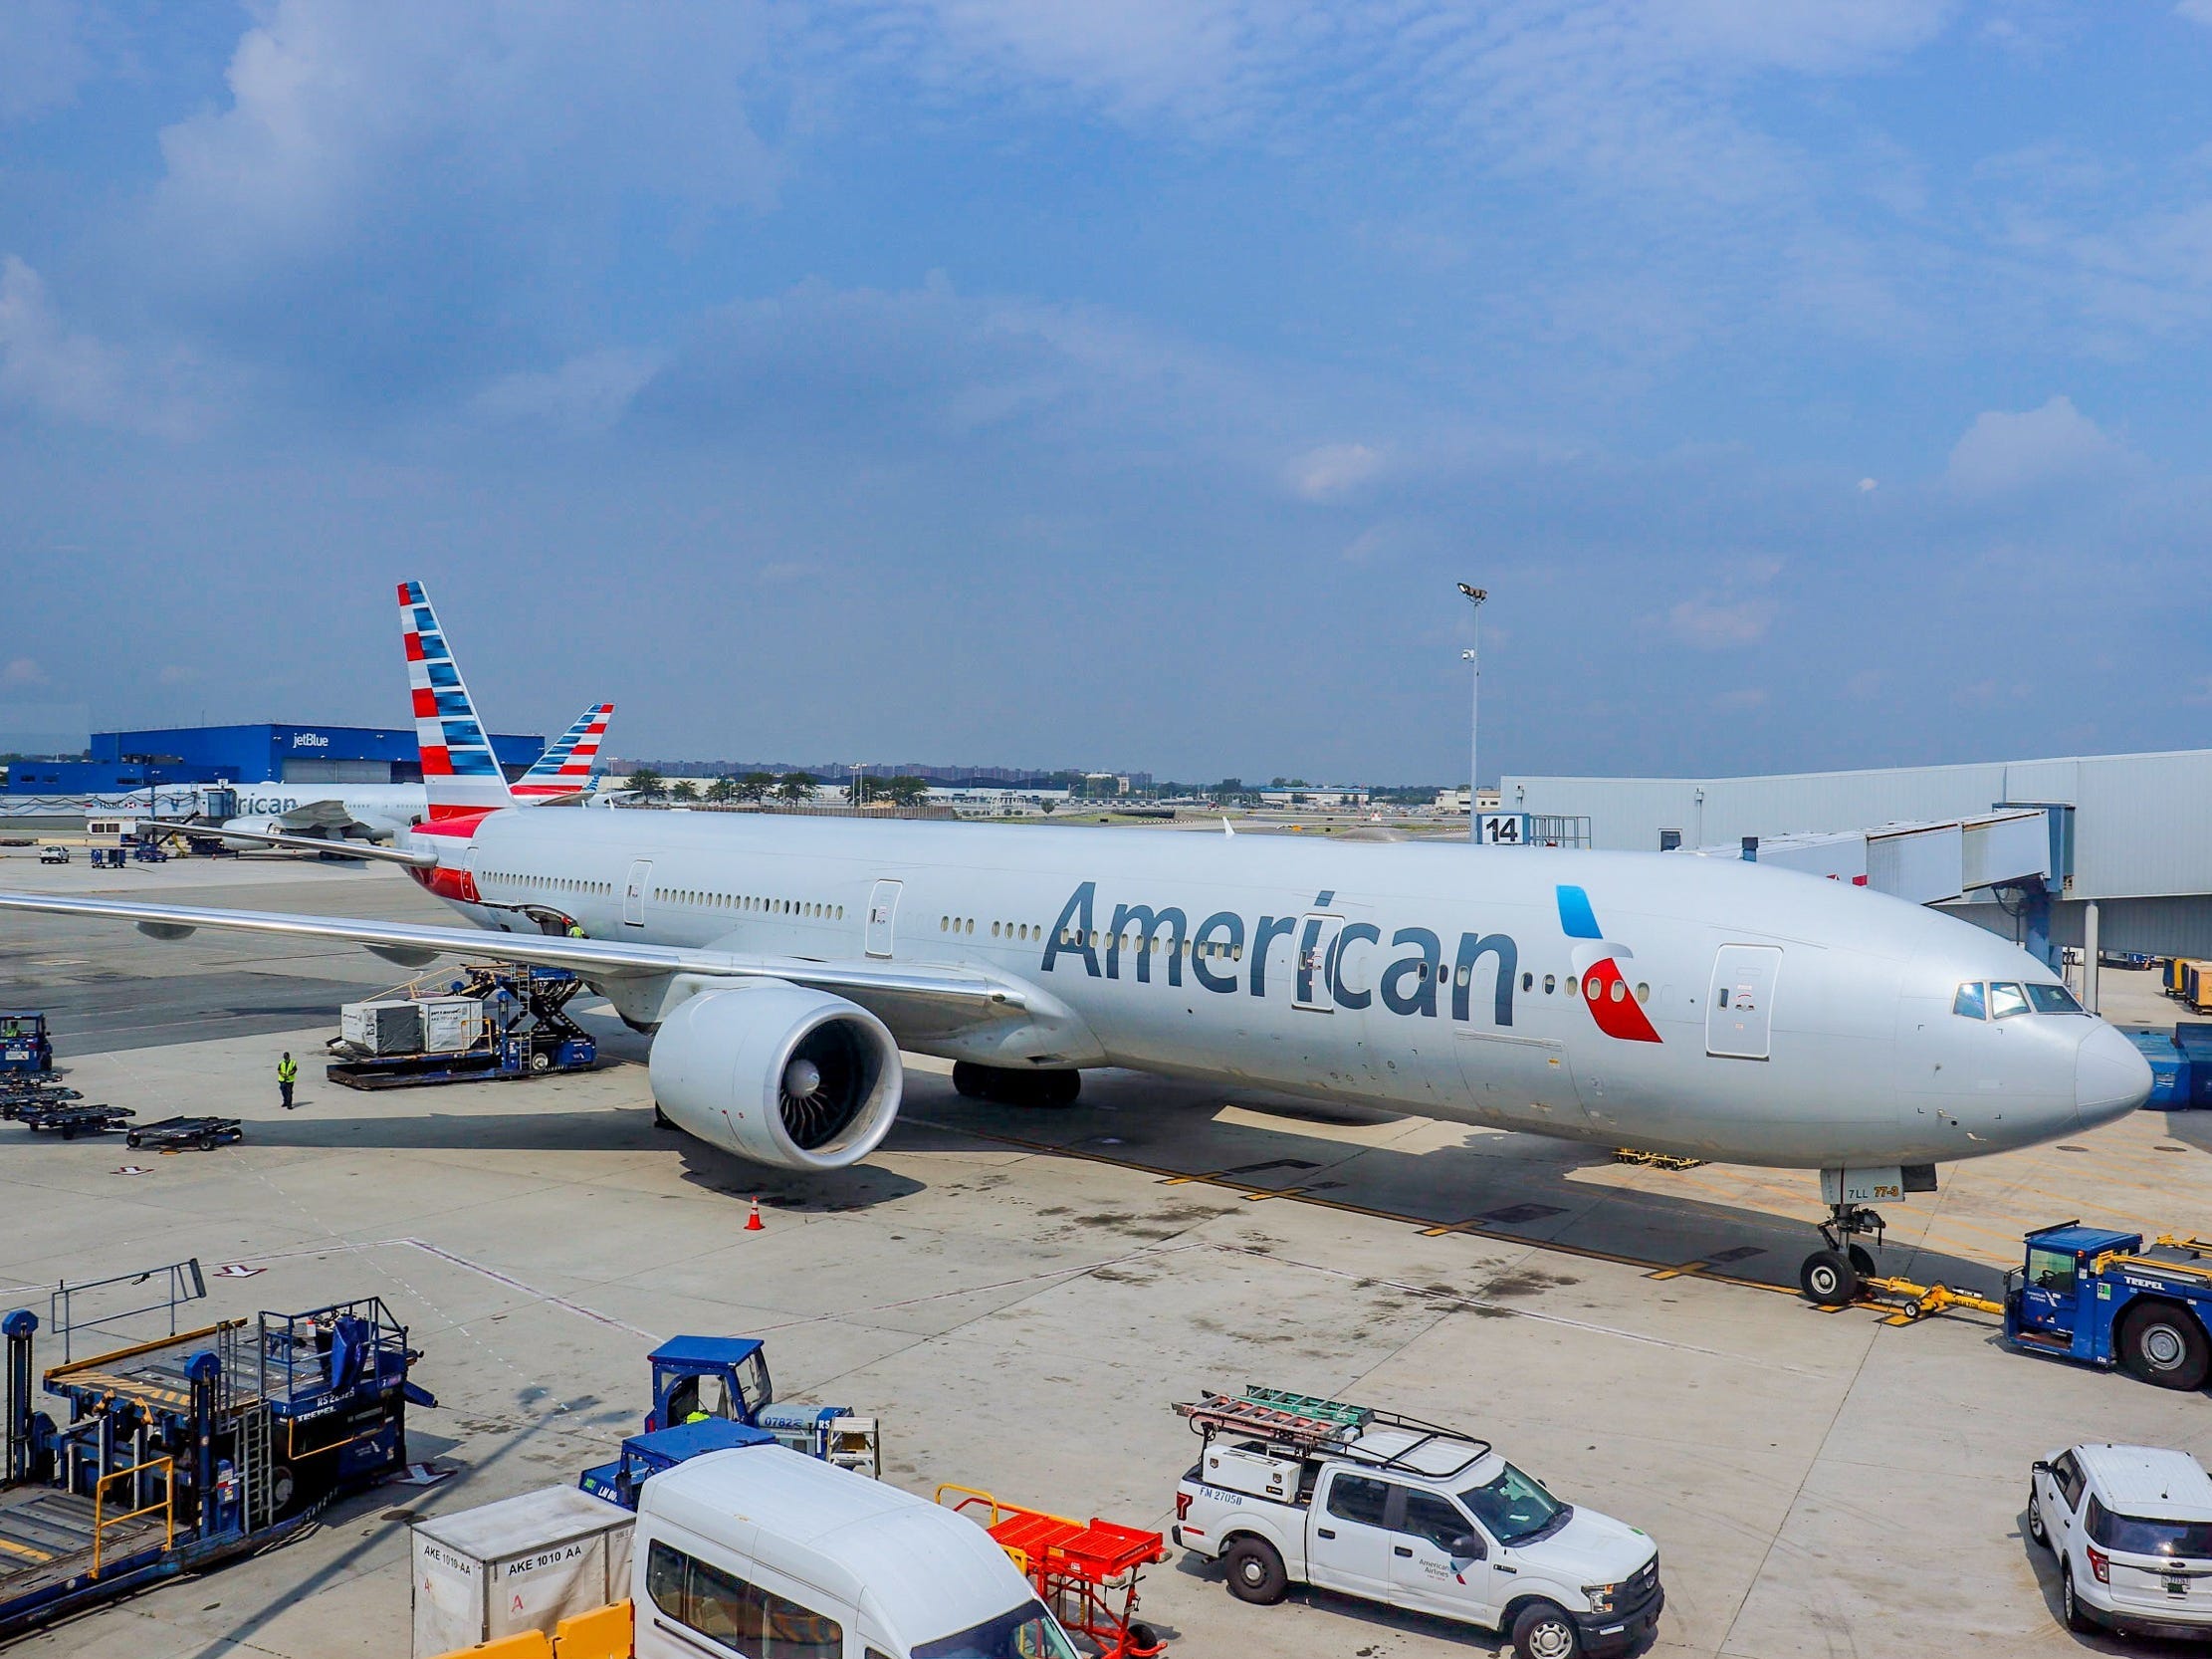 Volare con American Airlines in Europa durante la pandemia — Volo American Airlines New York-Madrid 2021